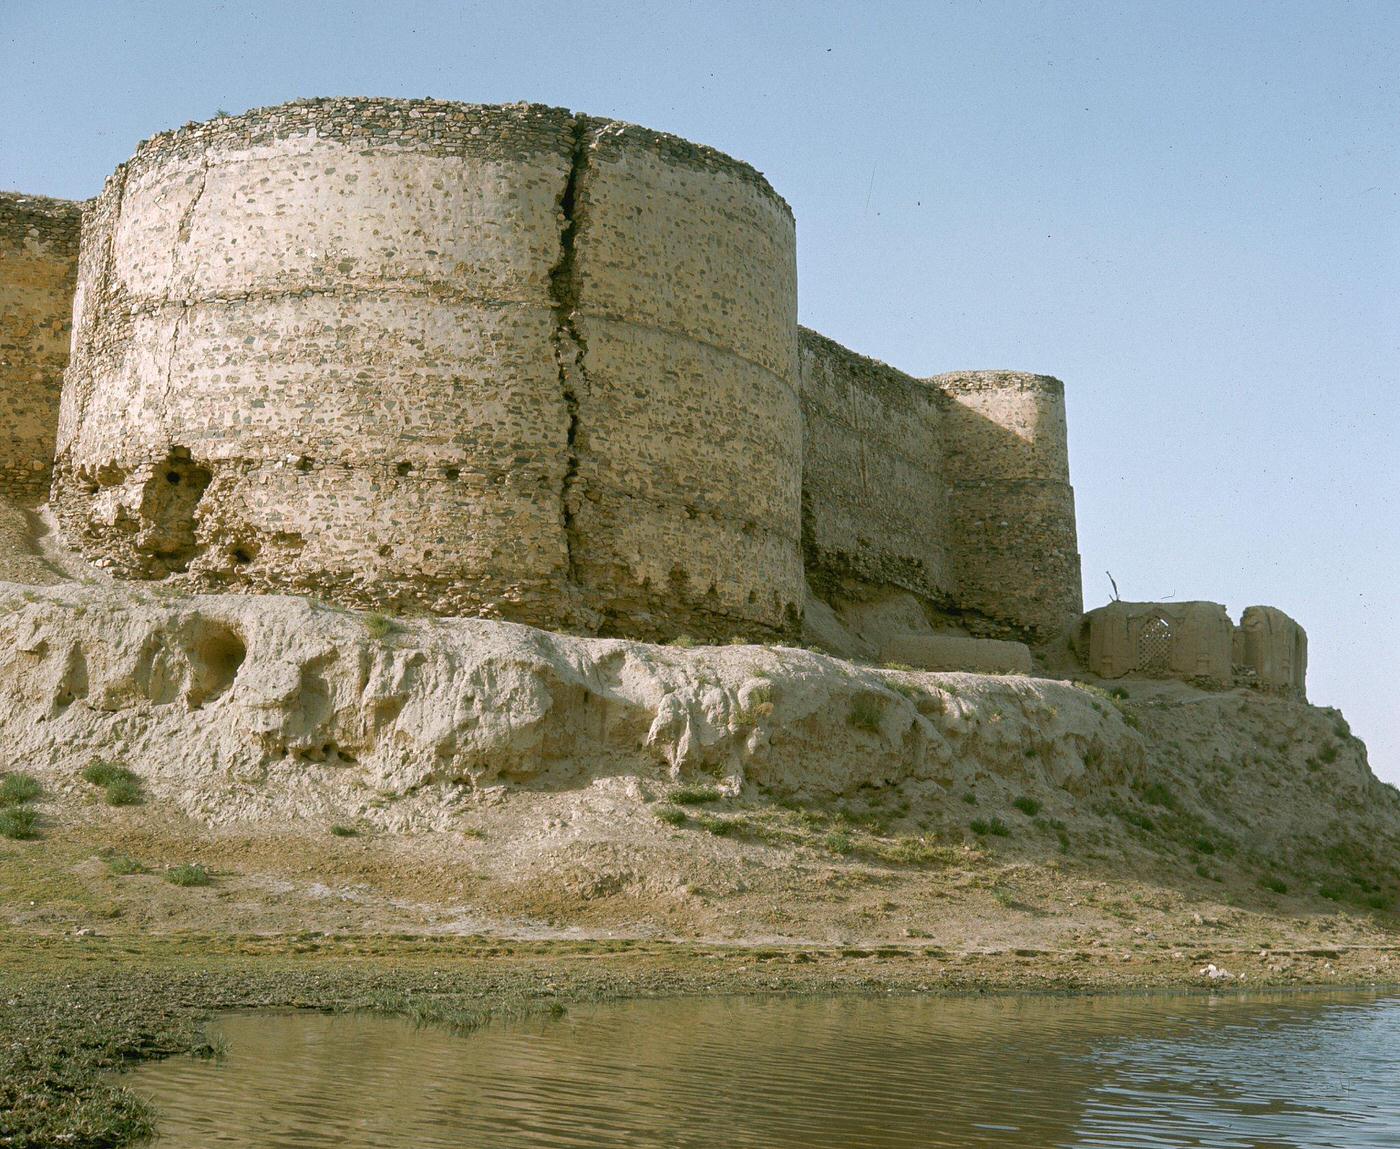 Bala Hissar Fortress in Kabul, bastion.